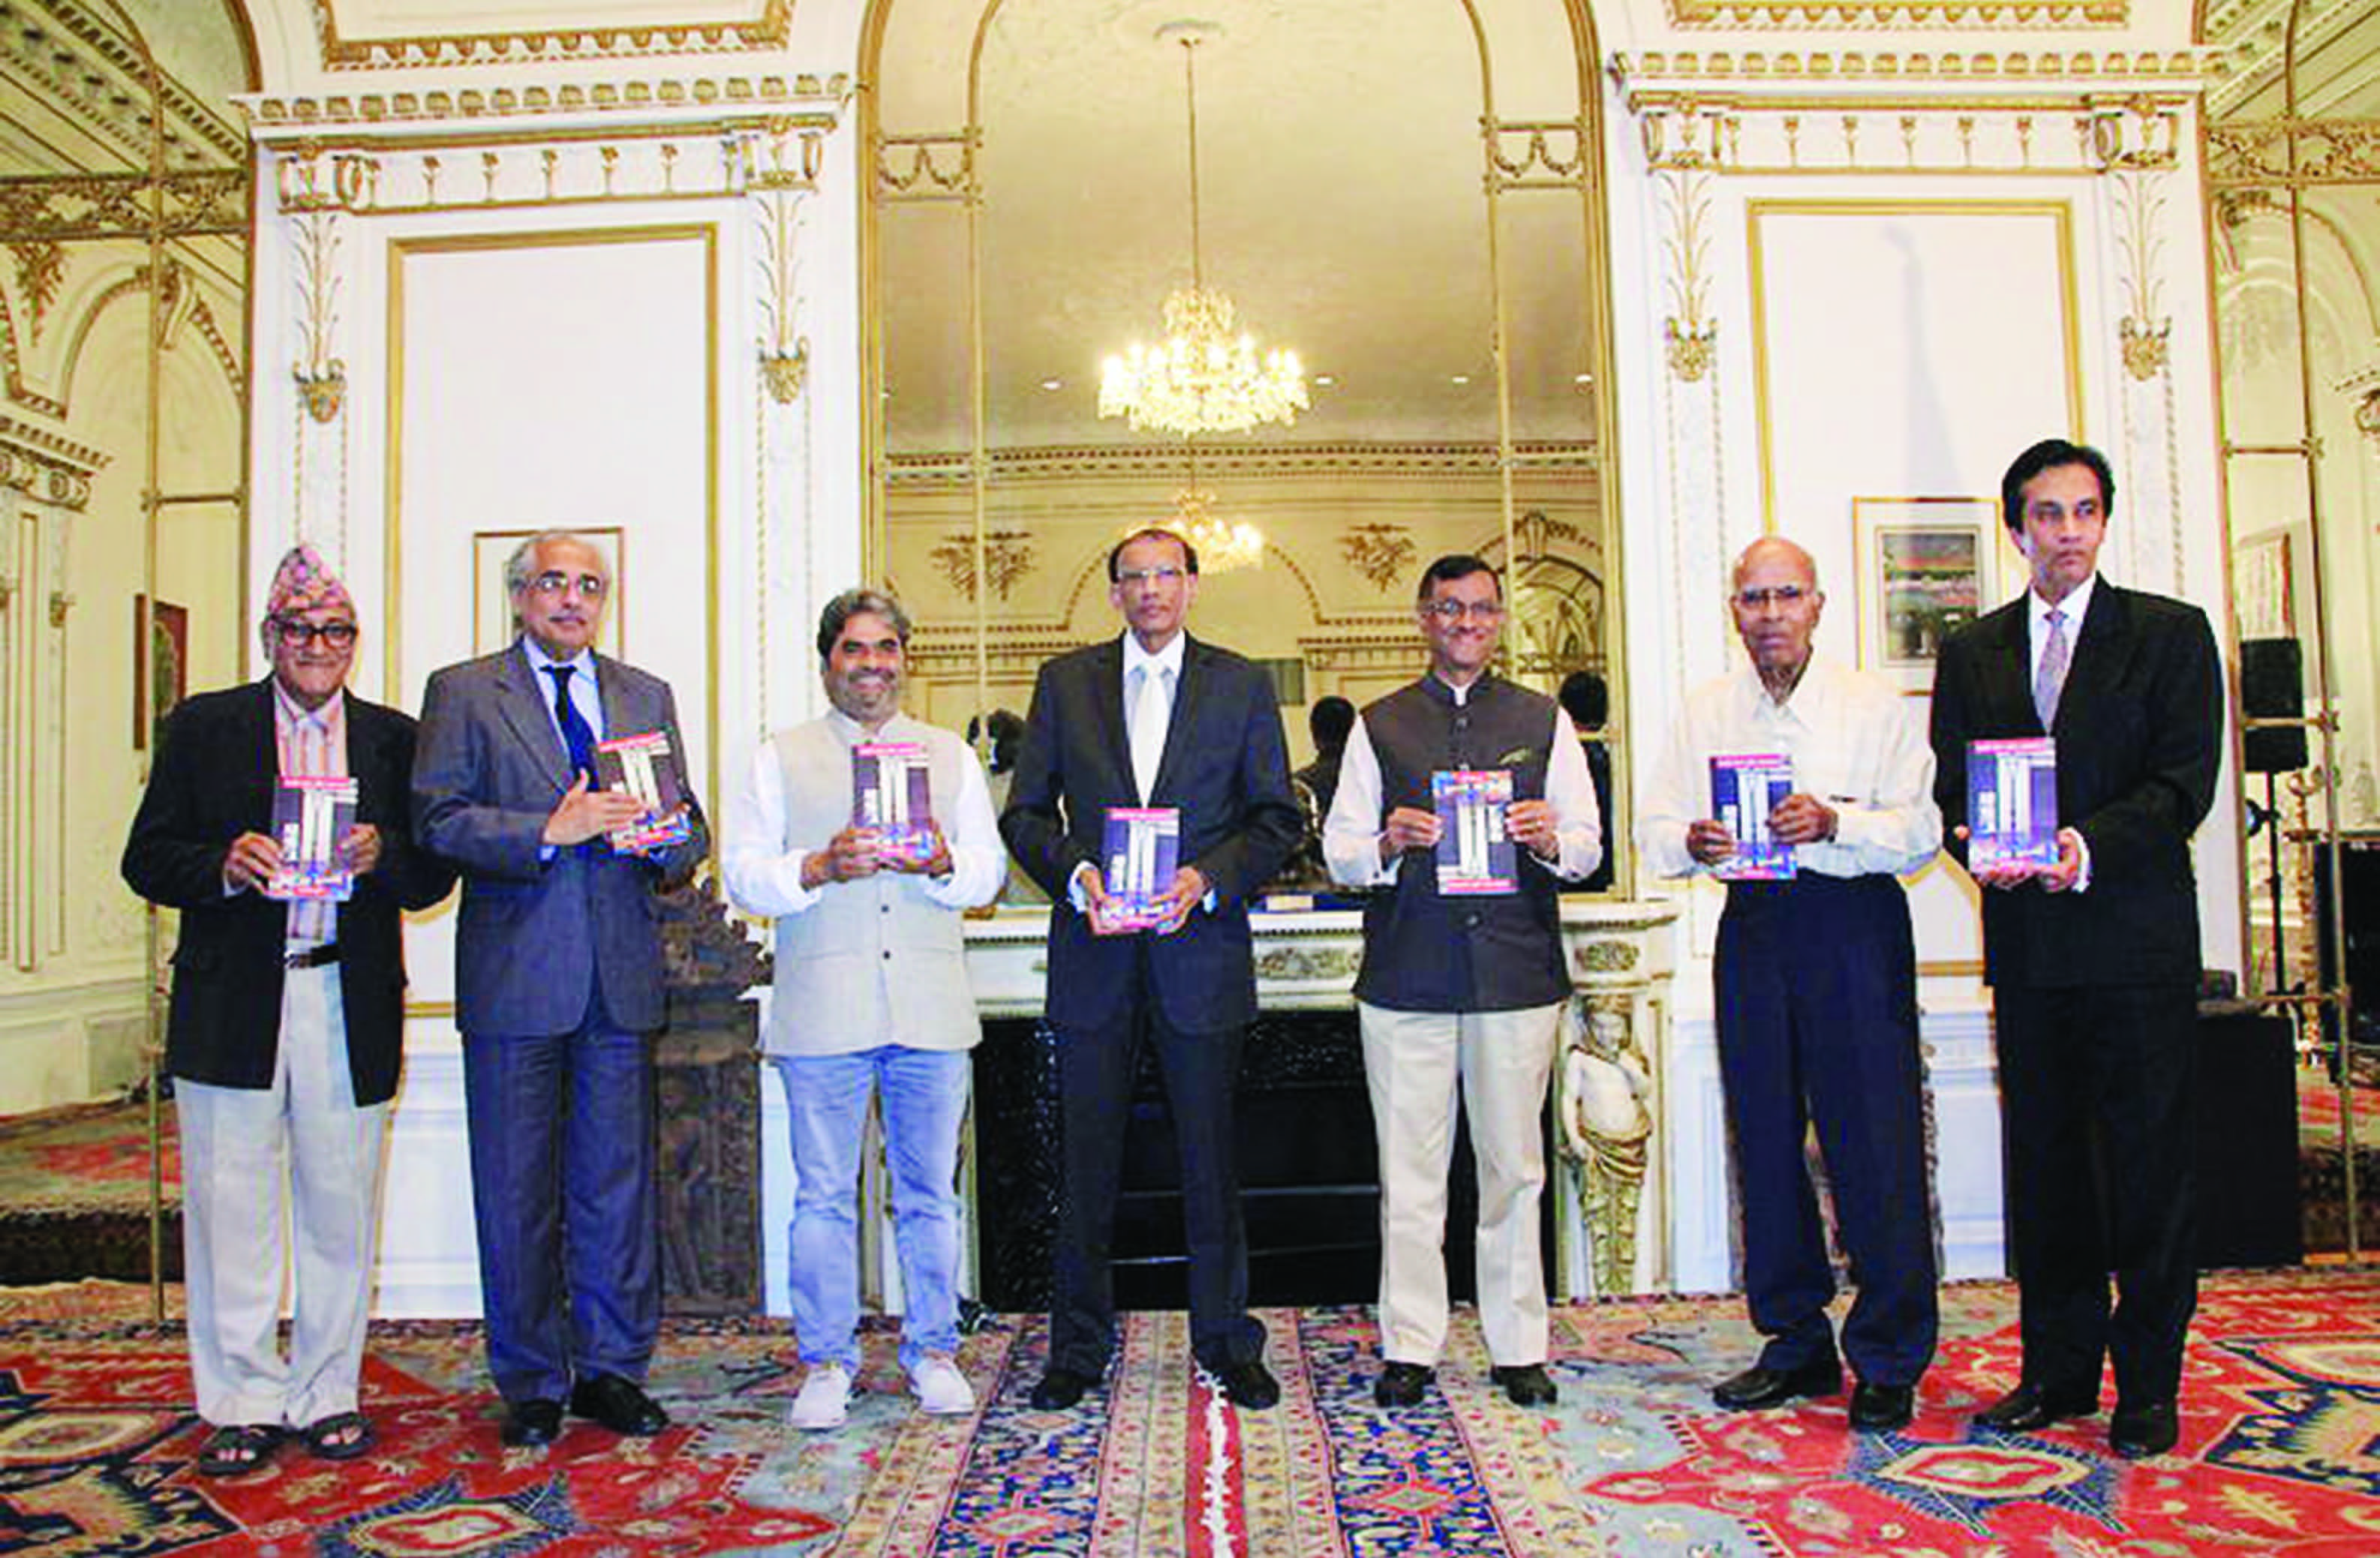 At the book release. From L to R: Mohan Agase, Vijay Nambiar, Vishal Bharadwaj, H.R. Shah, Ambassador Mulay, Dr. Jayraman, Dr. Navin Mehta